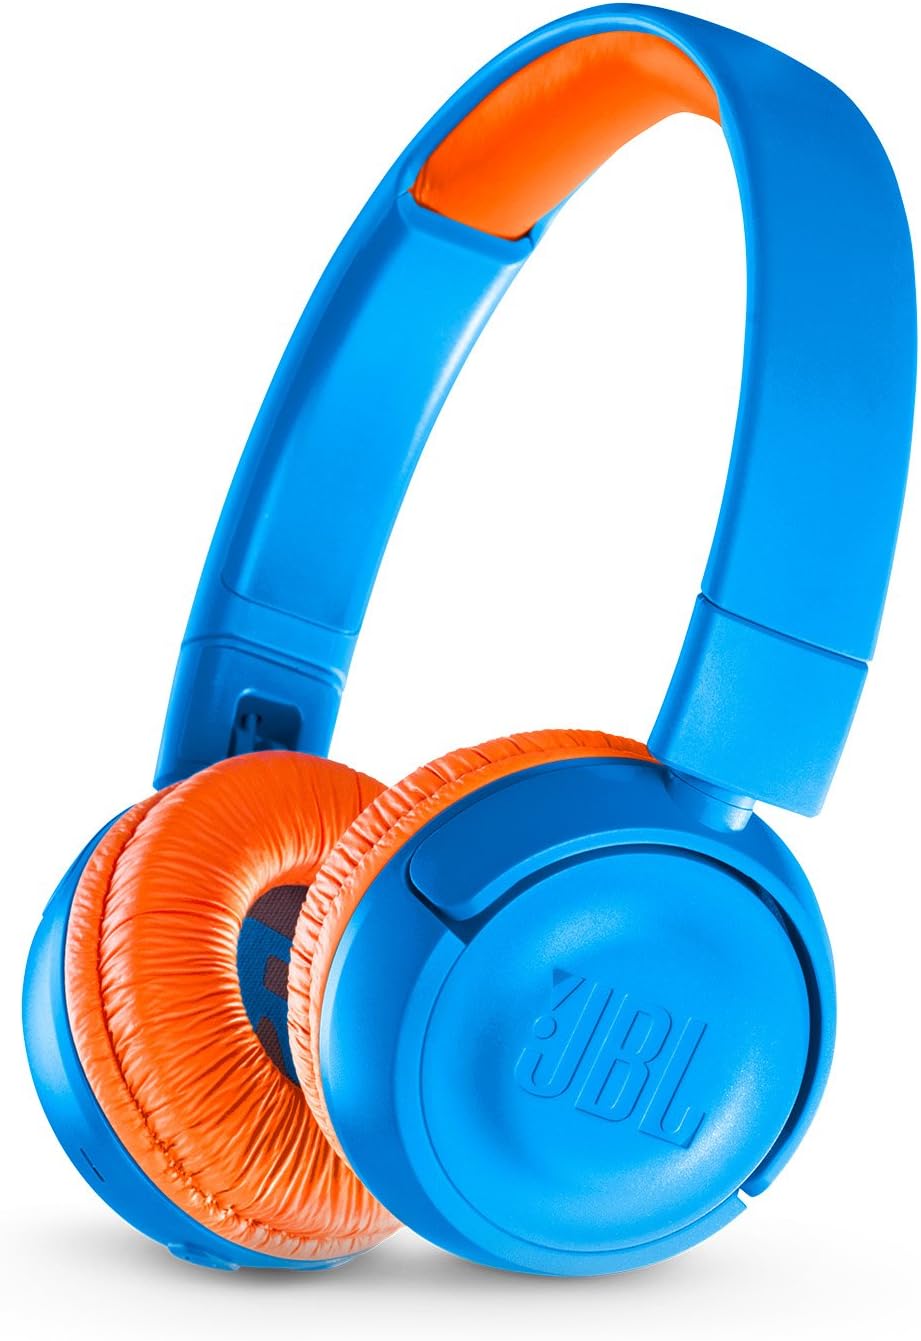 JBL JR 300BT On-Ear Wireless Bluetooth Headphones - Blue/Orange (New)